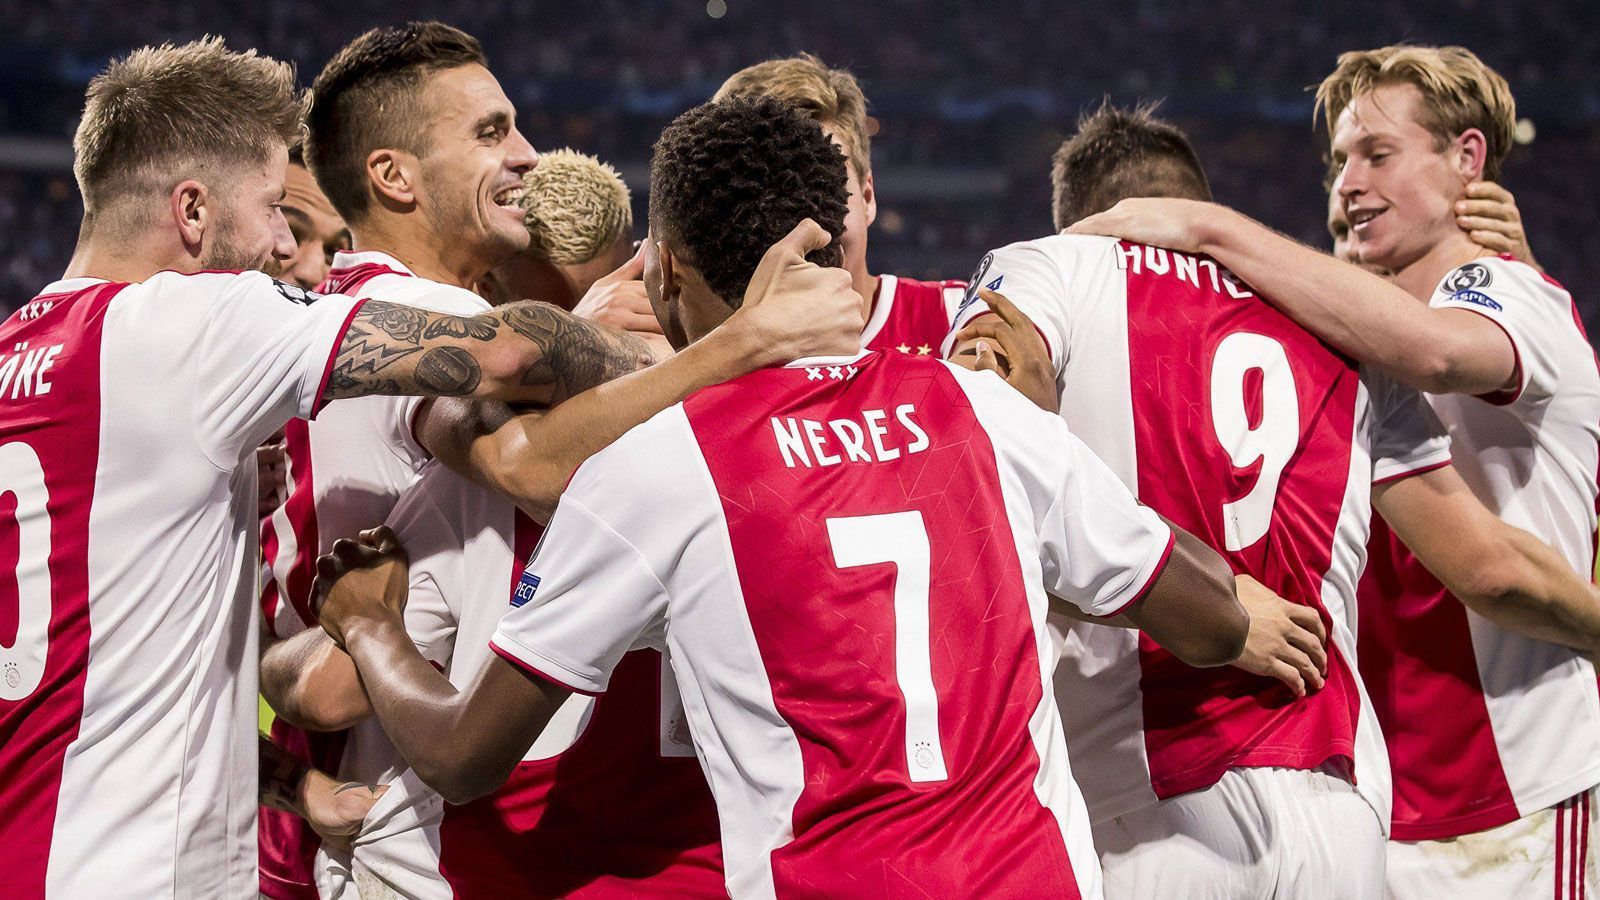 
                <strong>Das ist Bayern-Gegner Ajax Amsterdam</strong><br>
                Vier Jahre lang fand die Champions League ohne Ajax Amsterdam statt. Nun ist der niederländische Traditionsklub wieder dabei und trifft am Dienstag in München auf den FC Bayern. ran.de stellt den 33-maligen Meister näher vor.
              